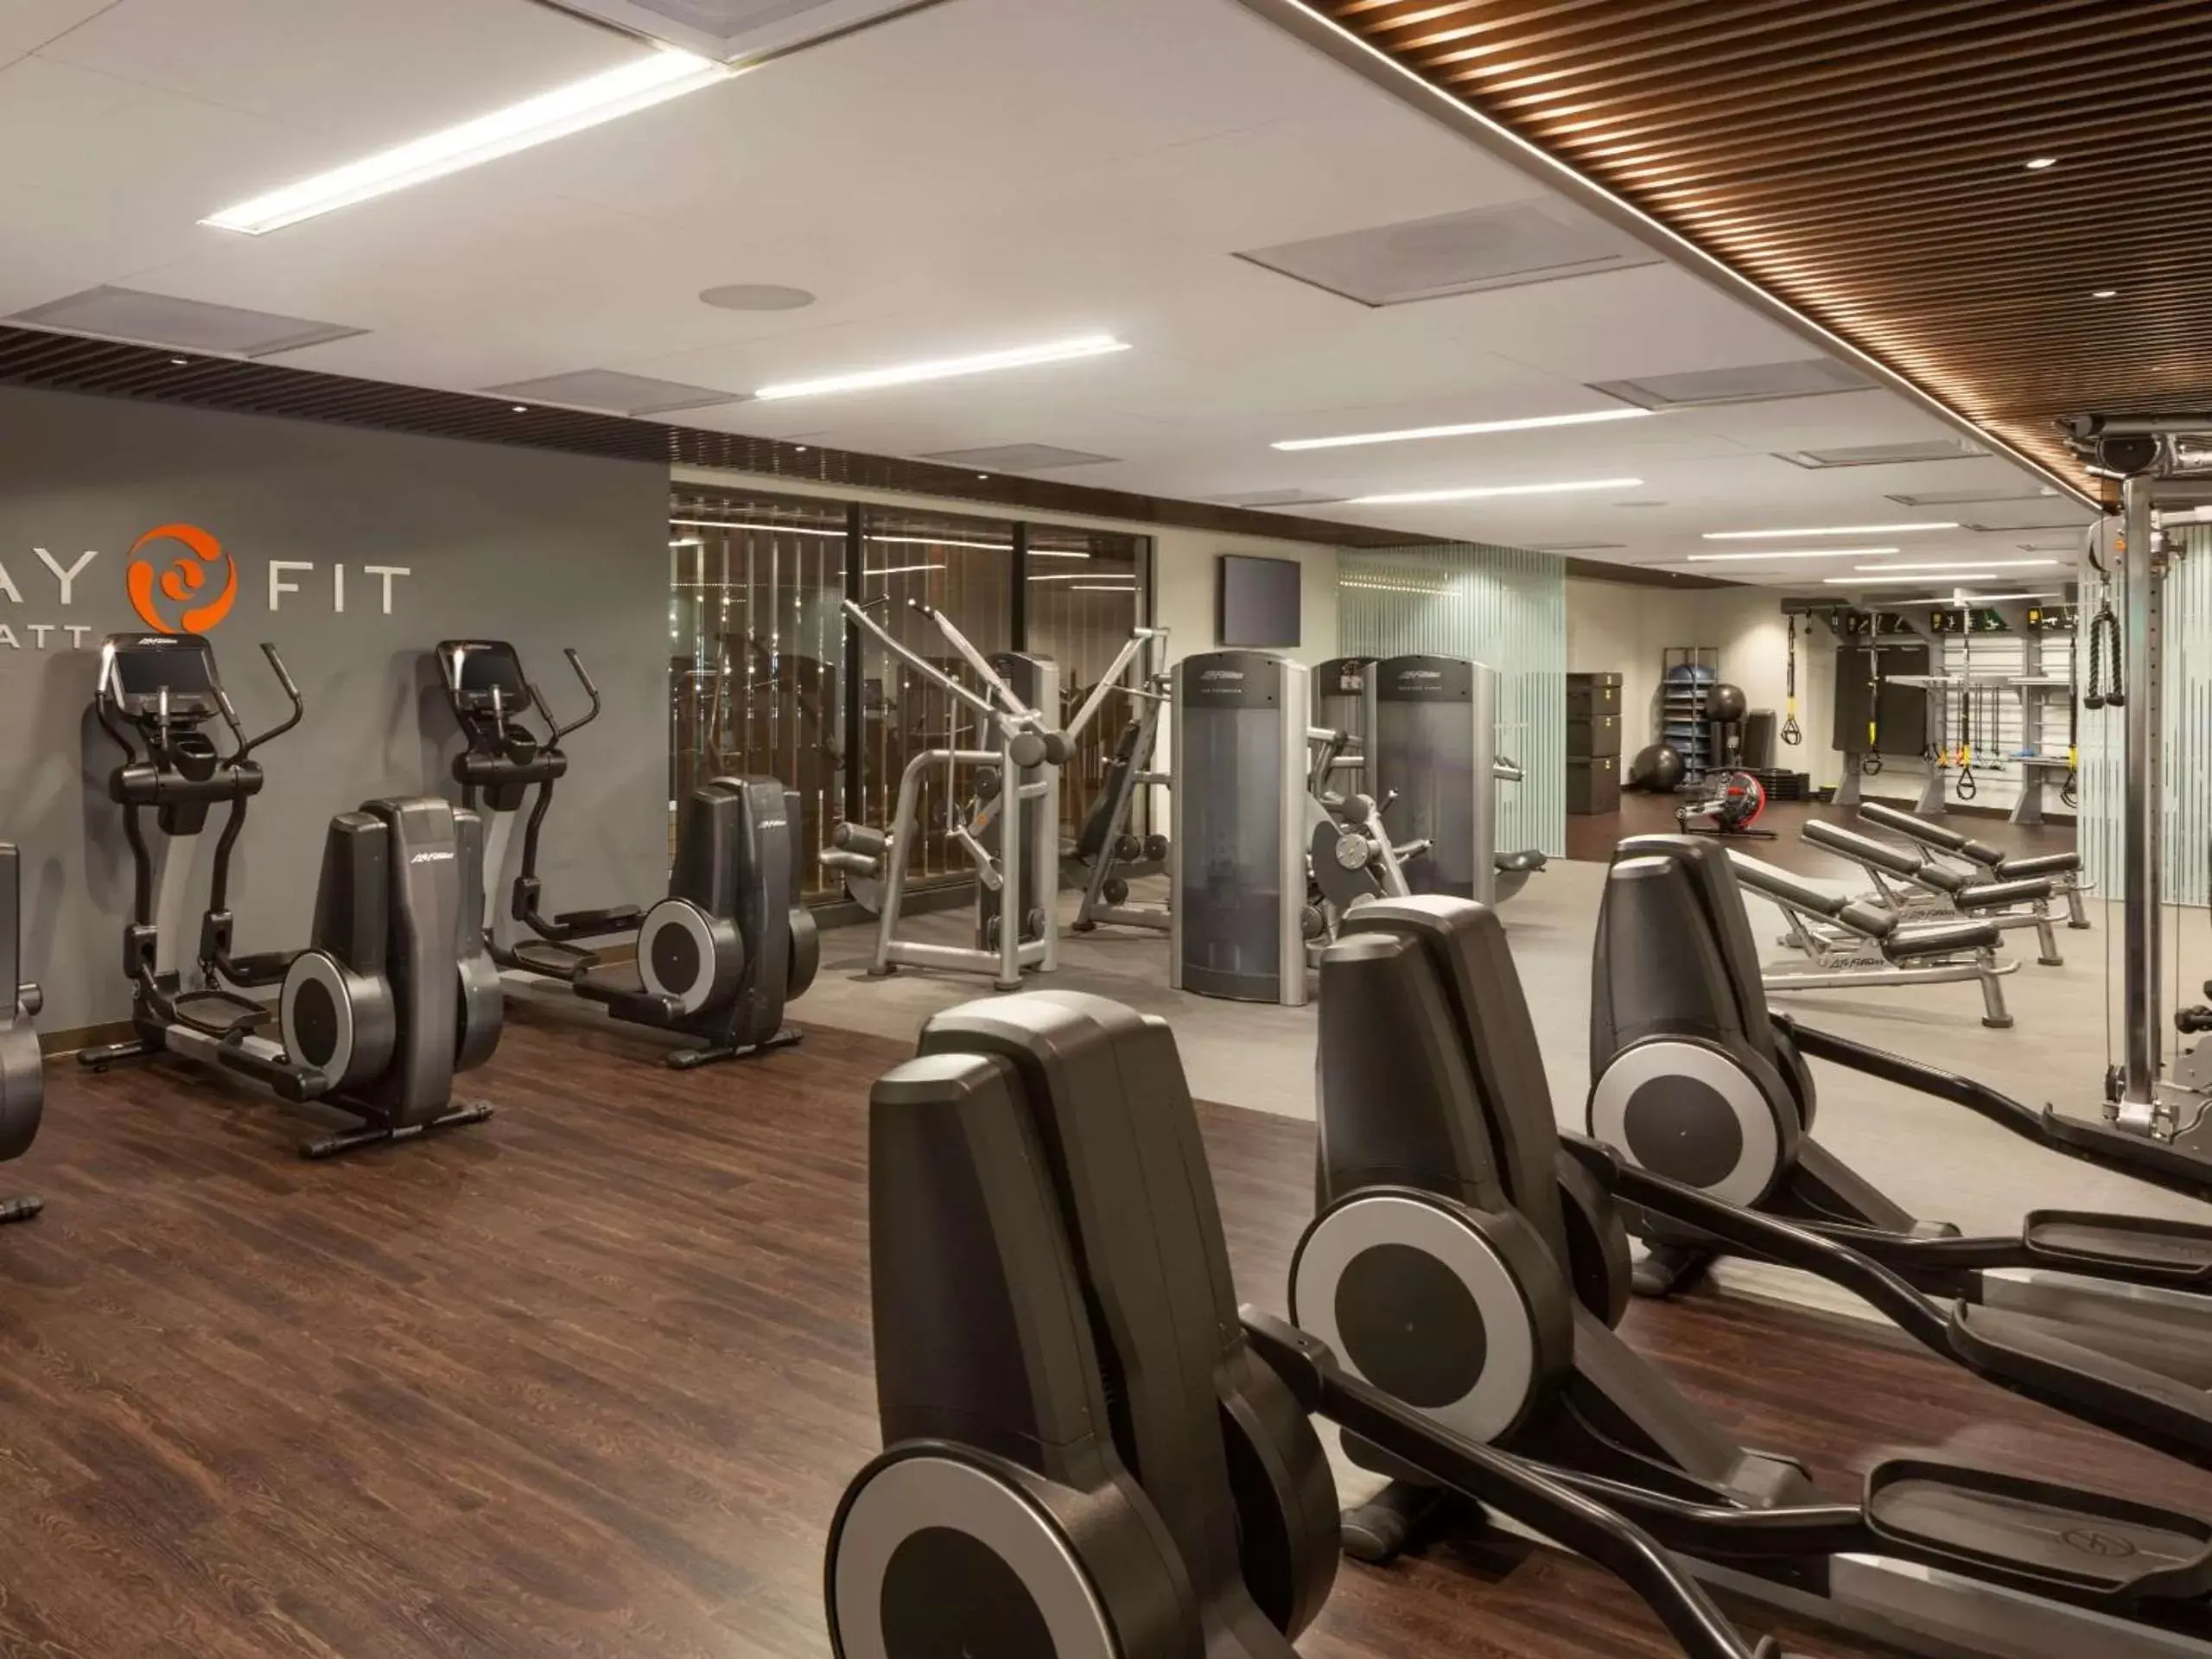 Fitness centre/facilities, Fitness Center/Facilities in Hyatt Regency San Francisco